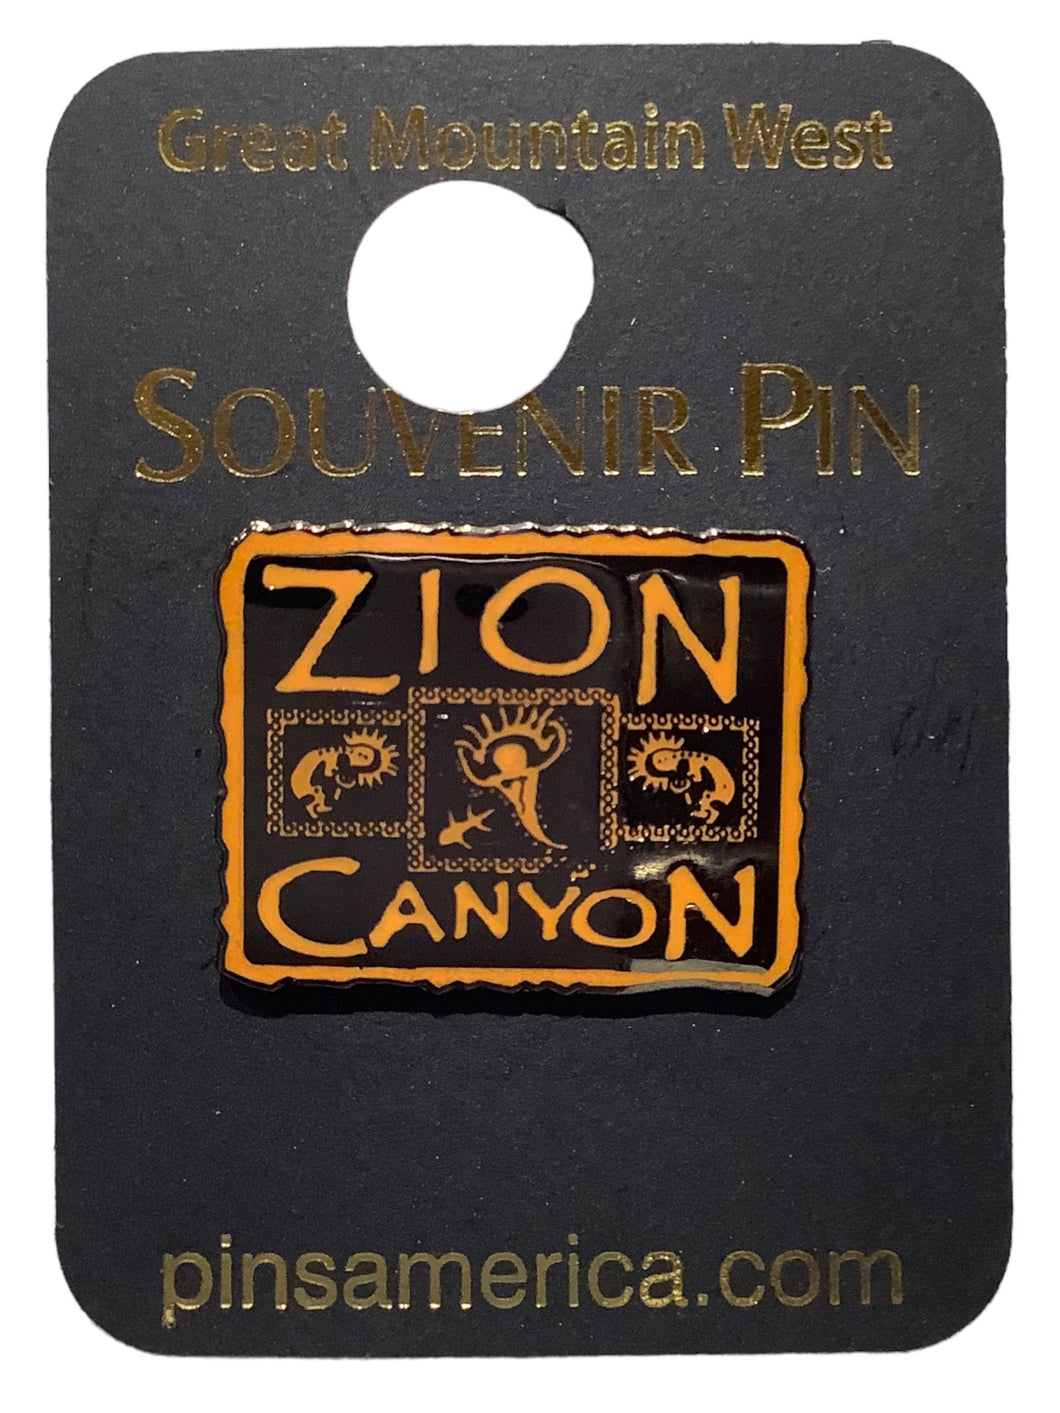 Zion Rock Souvenir Pin